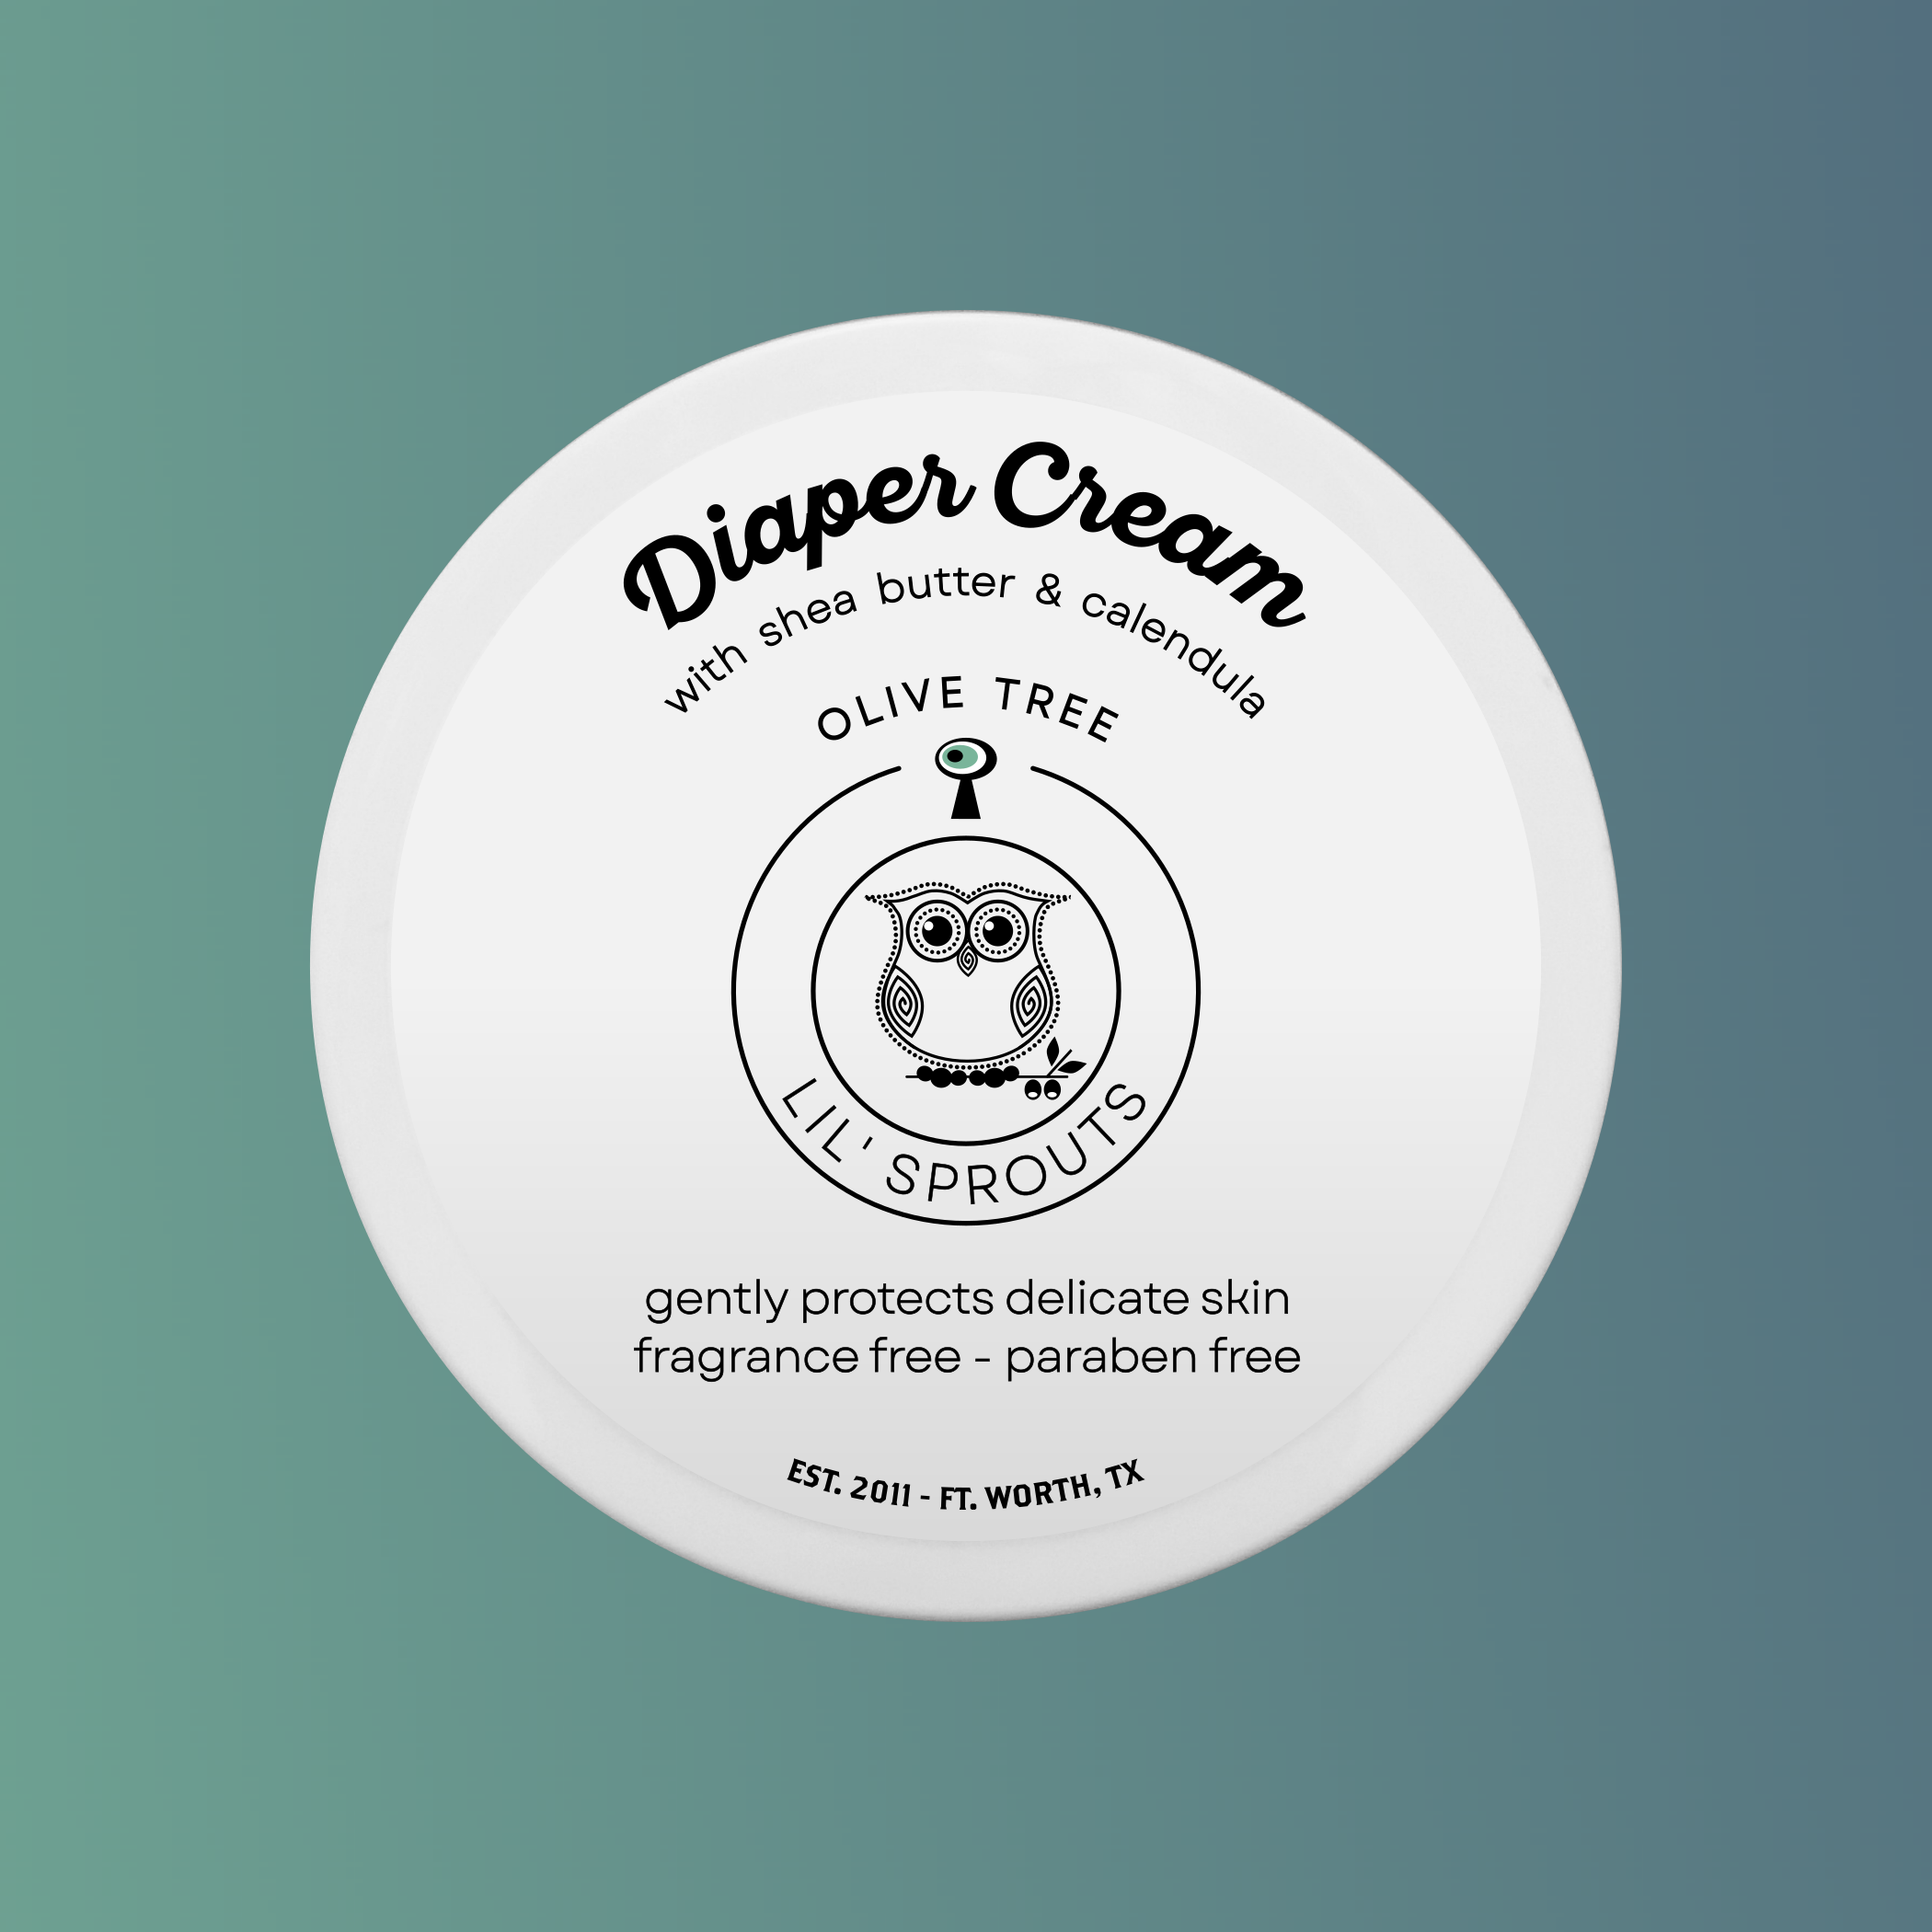 Calendula Diaper Cream